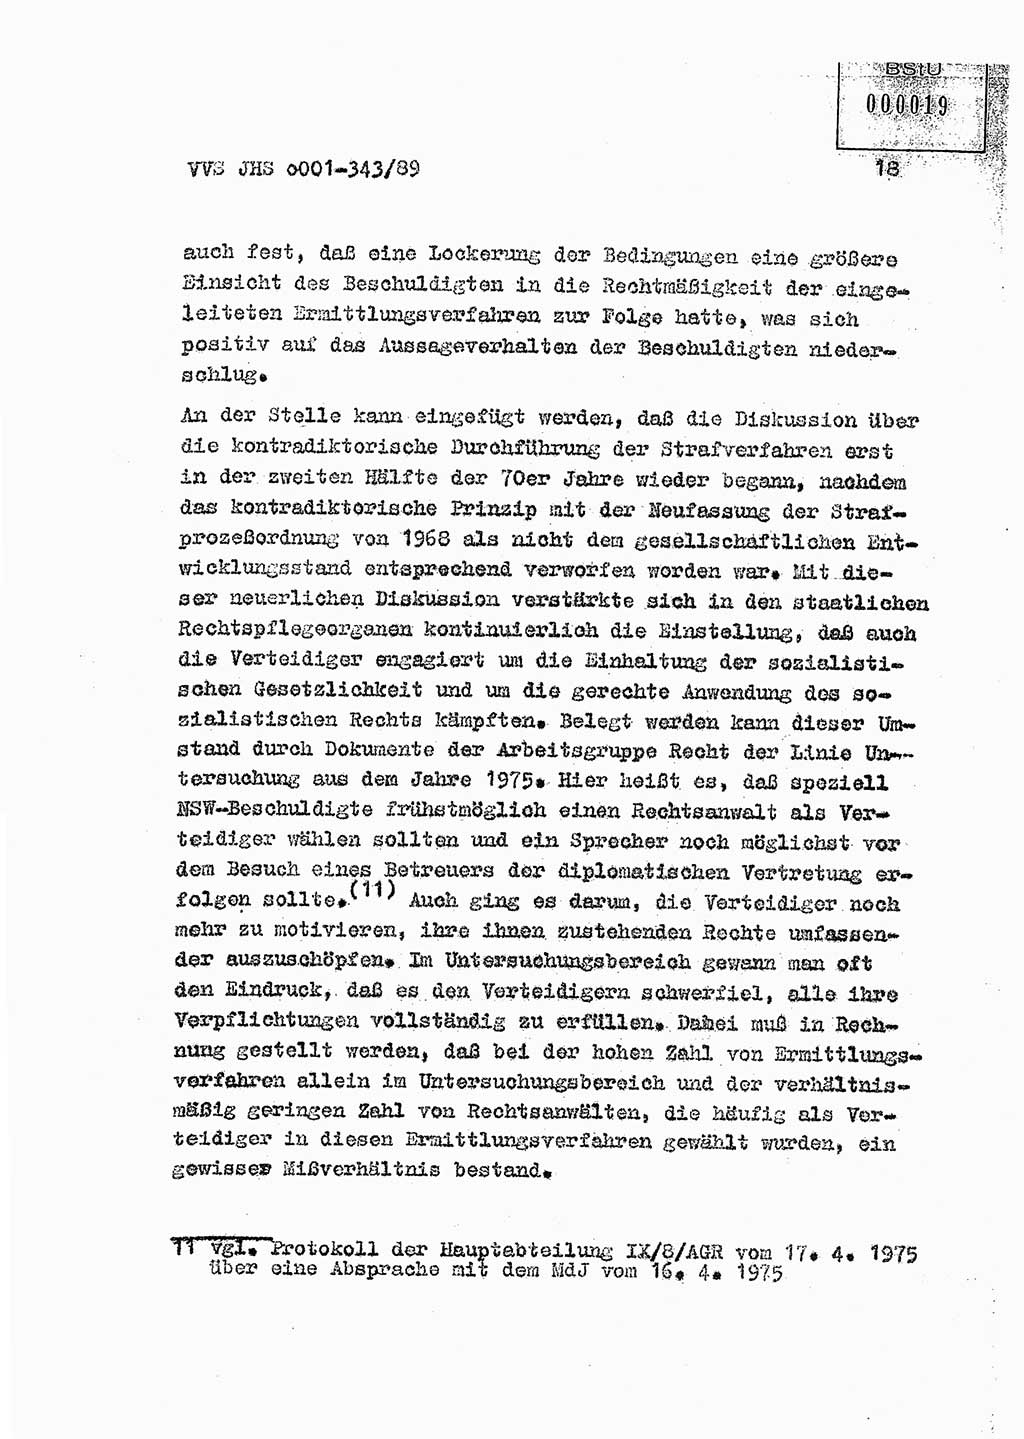 Diplomarbeit Offiziersschüler Axel Henschke (HA Ⅸ/9), Ministerium für Staatssicherheit (MfS) [Deutsche Demokratische Republik (DDR)], Juristische Hochschule (JHS), Vertrauliche Verschlußsache (VVS) o001-343/89, Potsdam 1989, Seite 18 (Dipl.-Arb. MfS DDR JHS VVS o001-343/89 1989, S. 18)